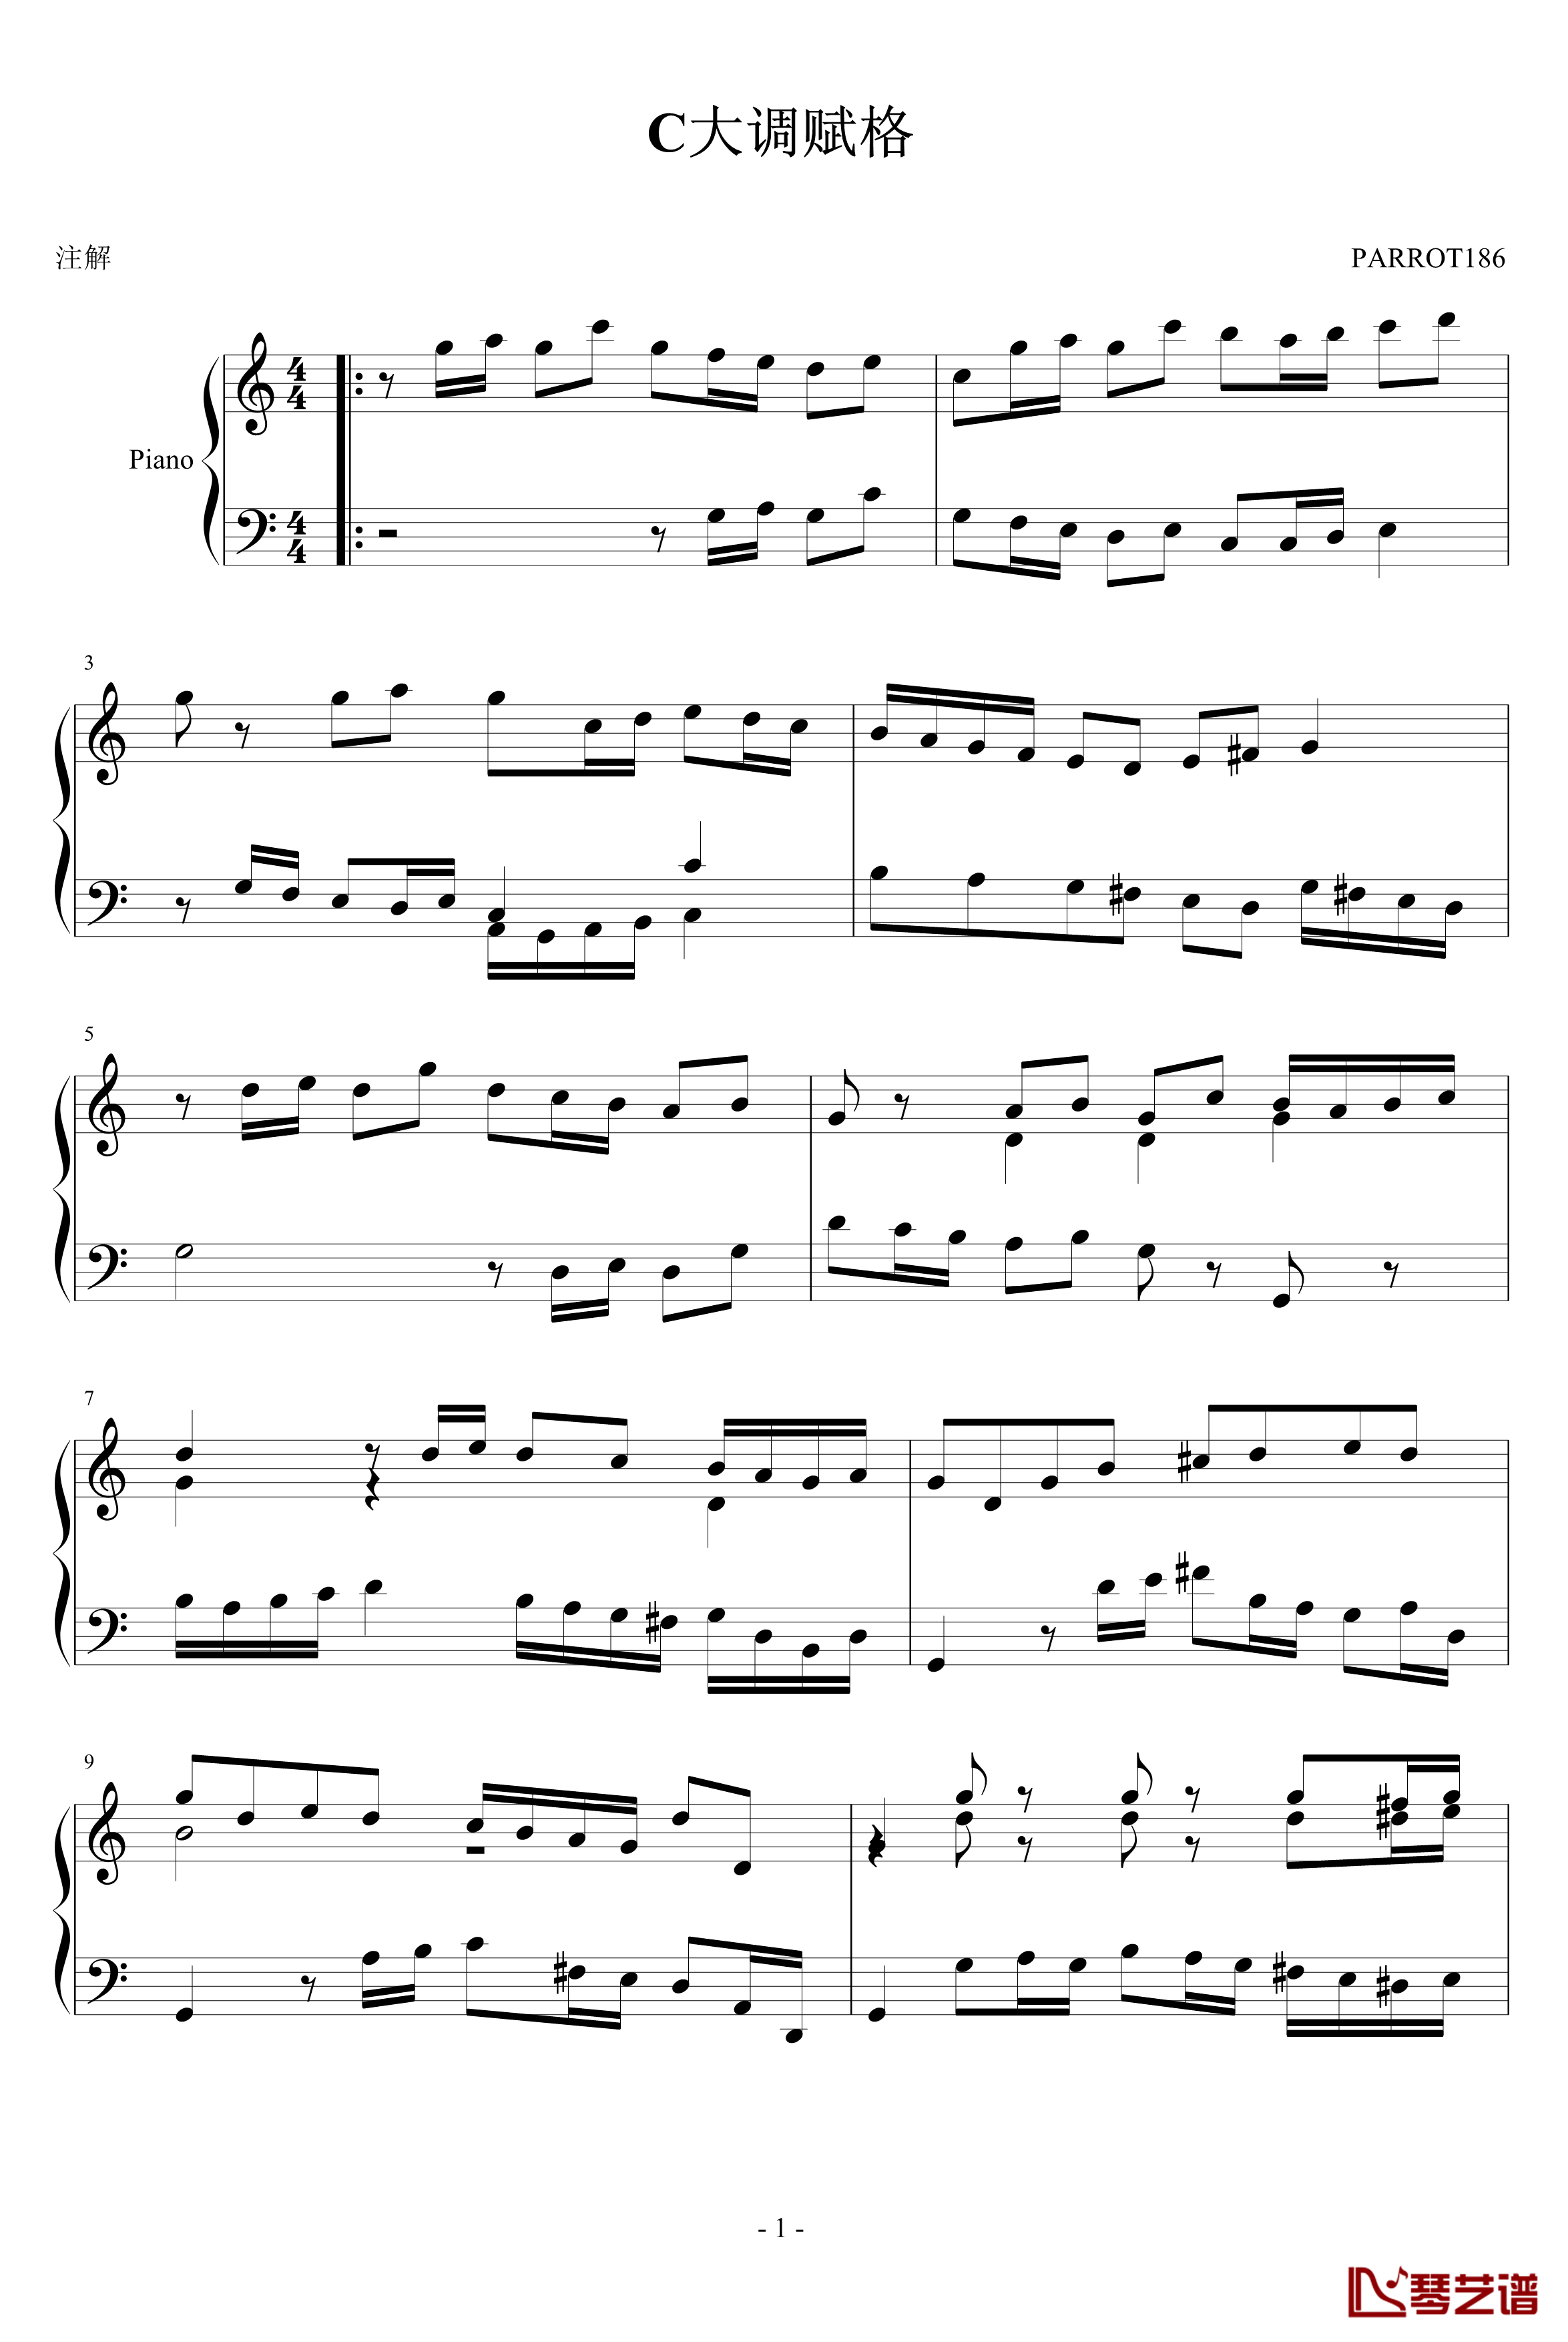 C大调赋格钢琴谱-PARROT1861